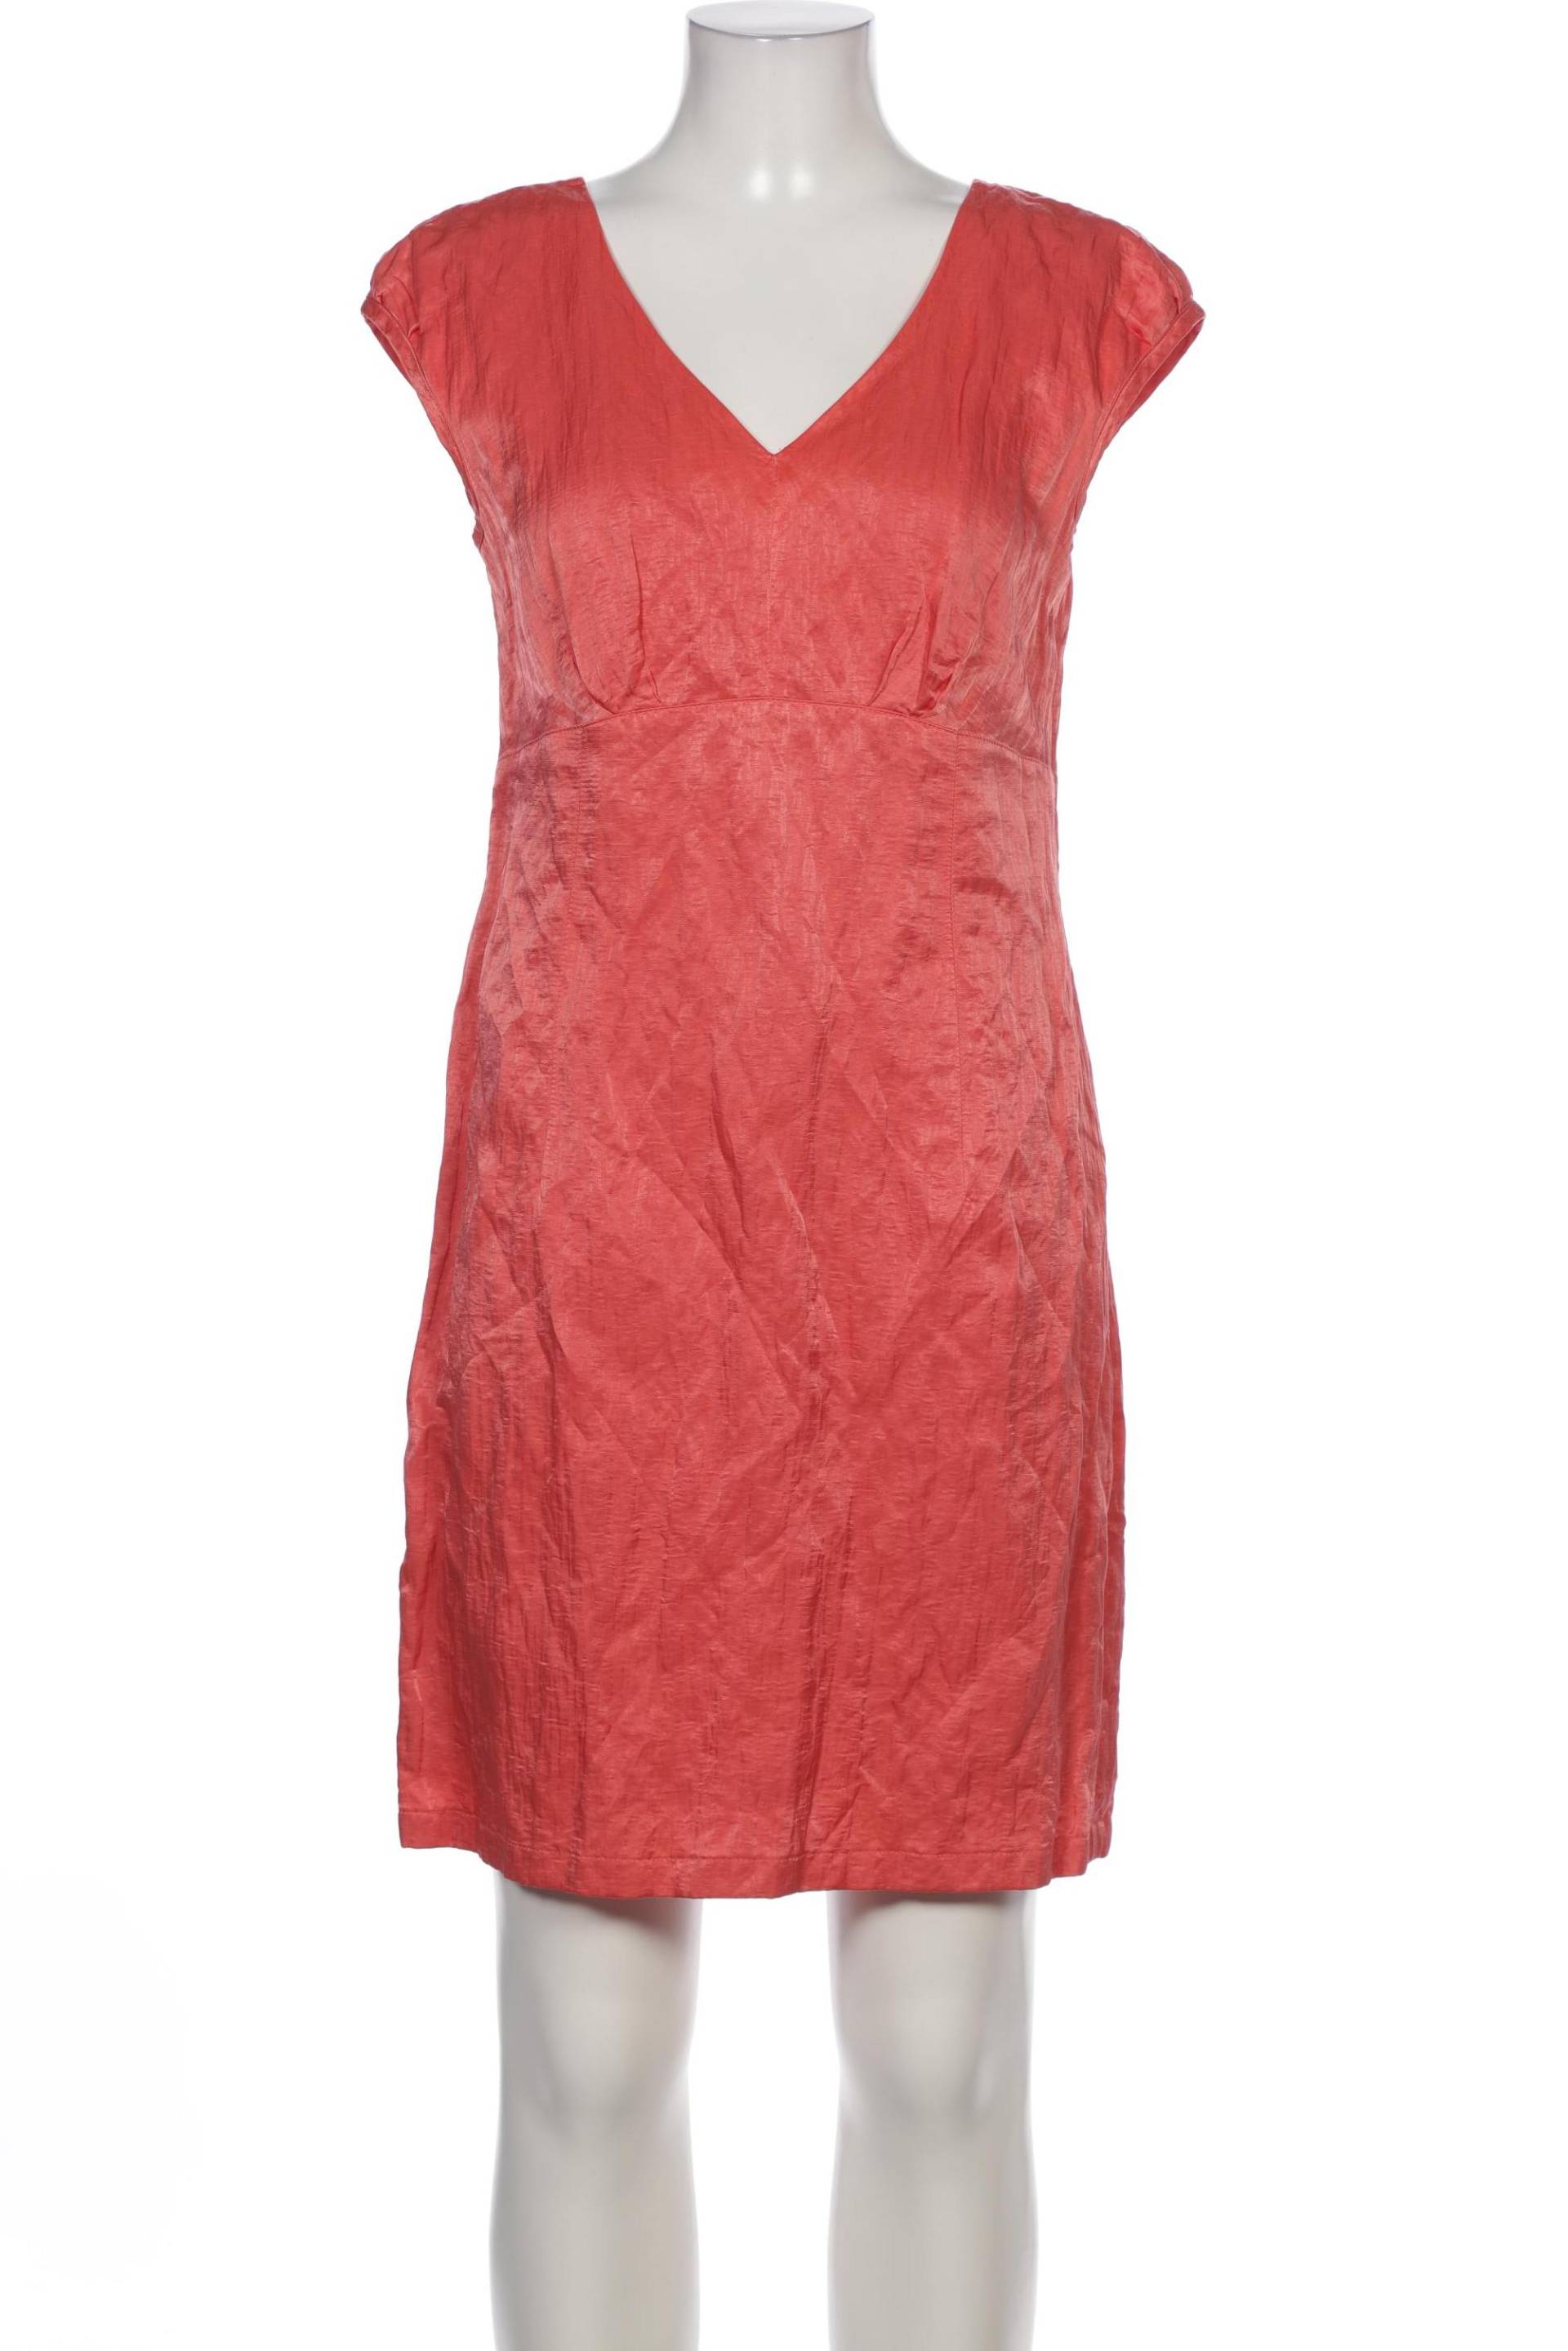 Madeleine Damen Kleid, rot, Gr. 40 von Madeleine